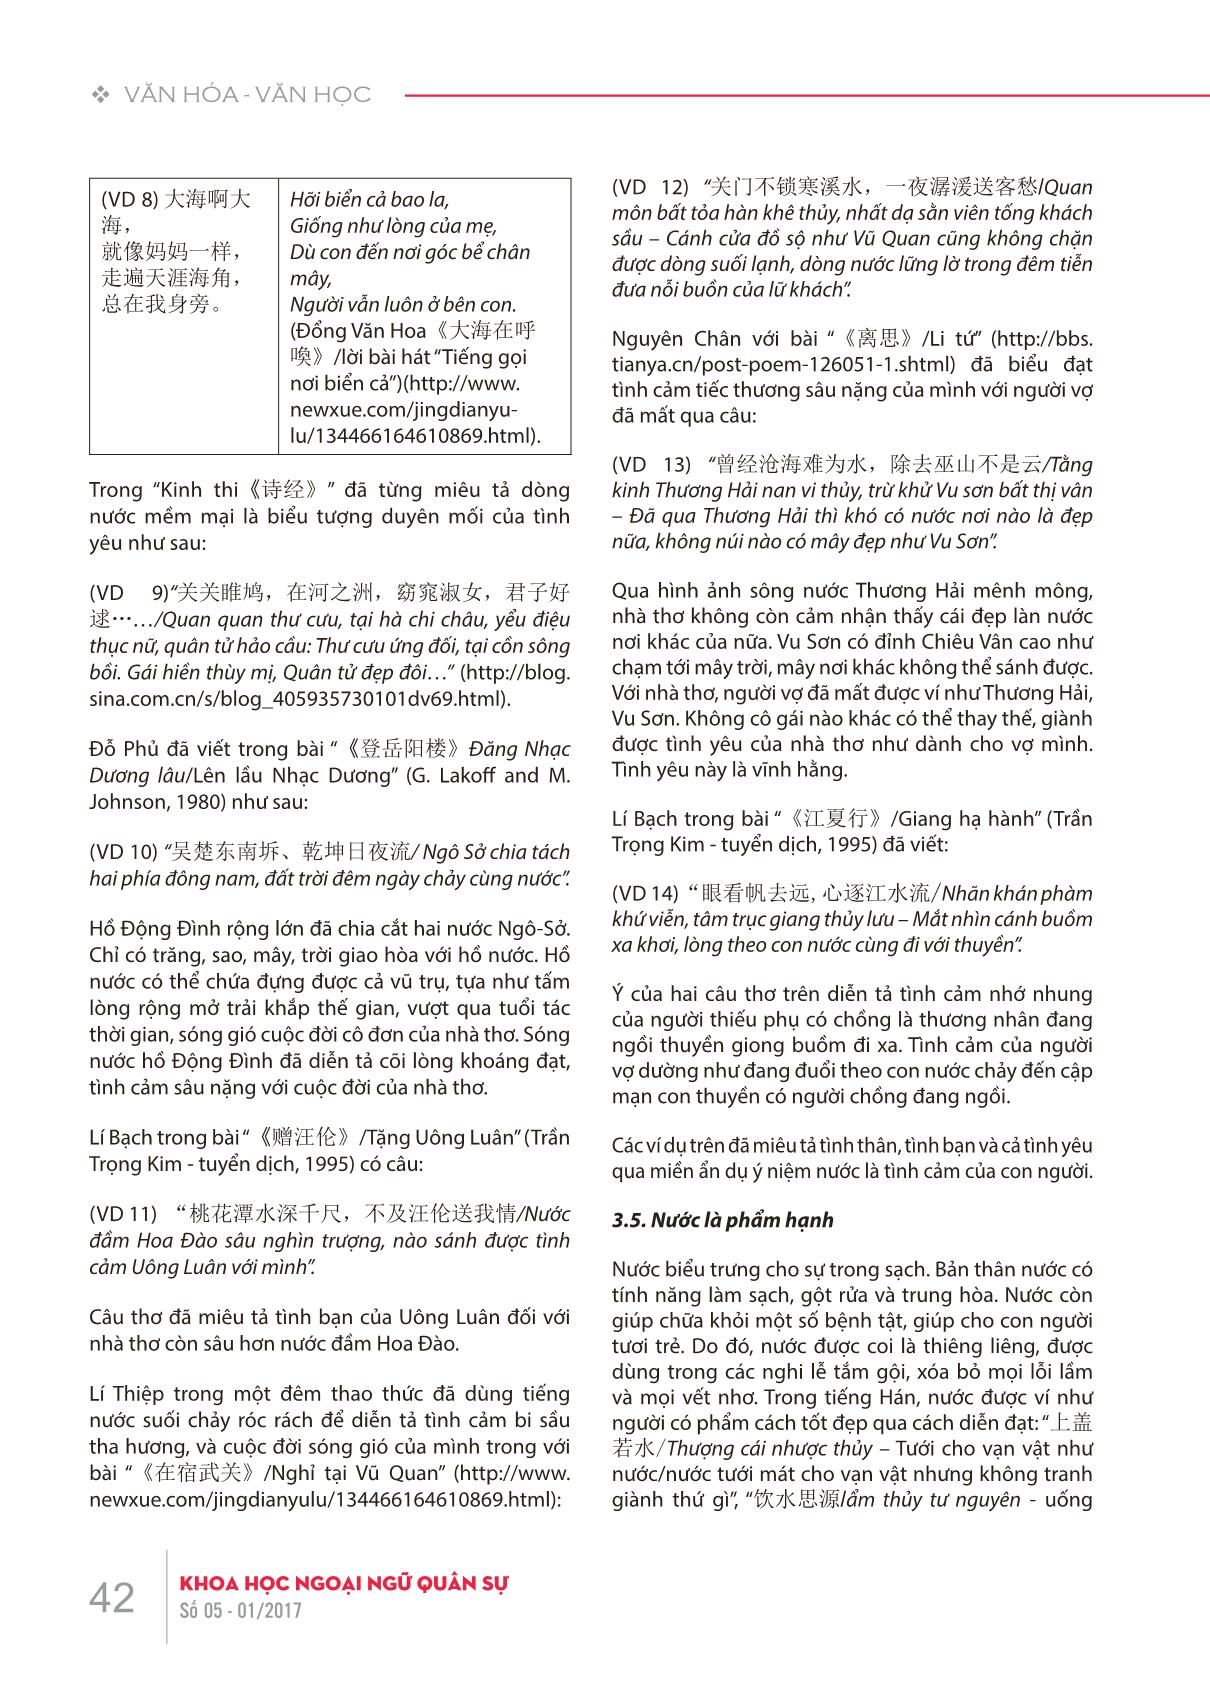 Bàn về ẩn dụ ý niệm 水/nước với con người trong tiếng Hán trang 5